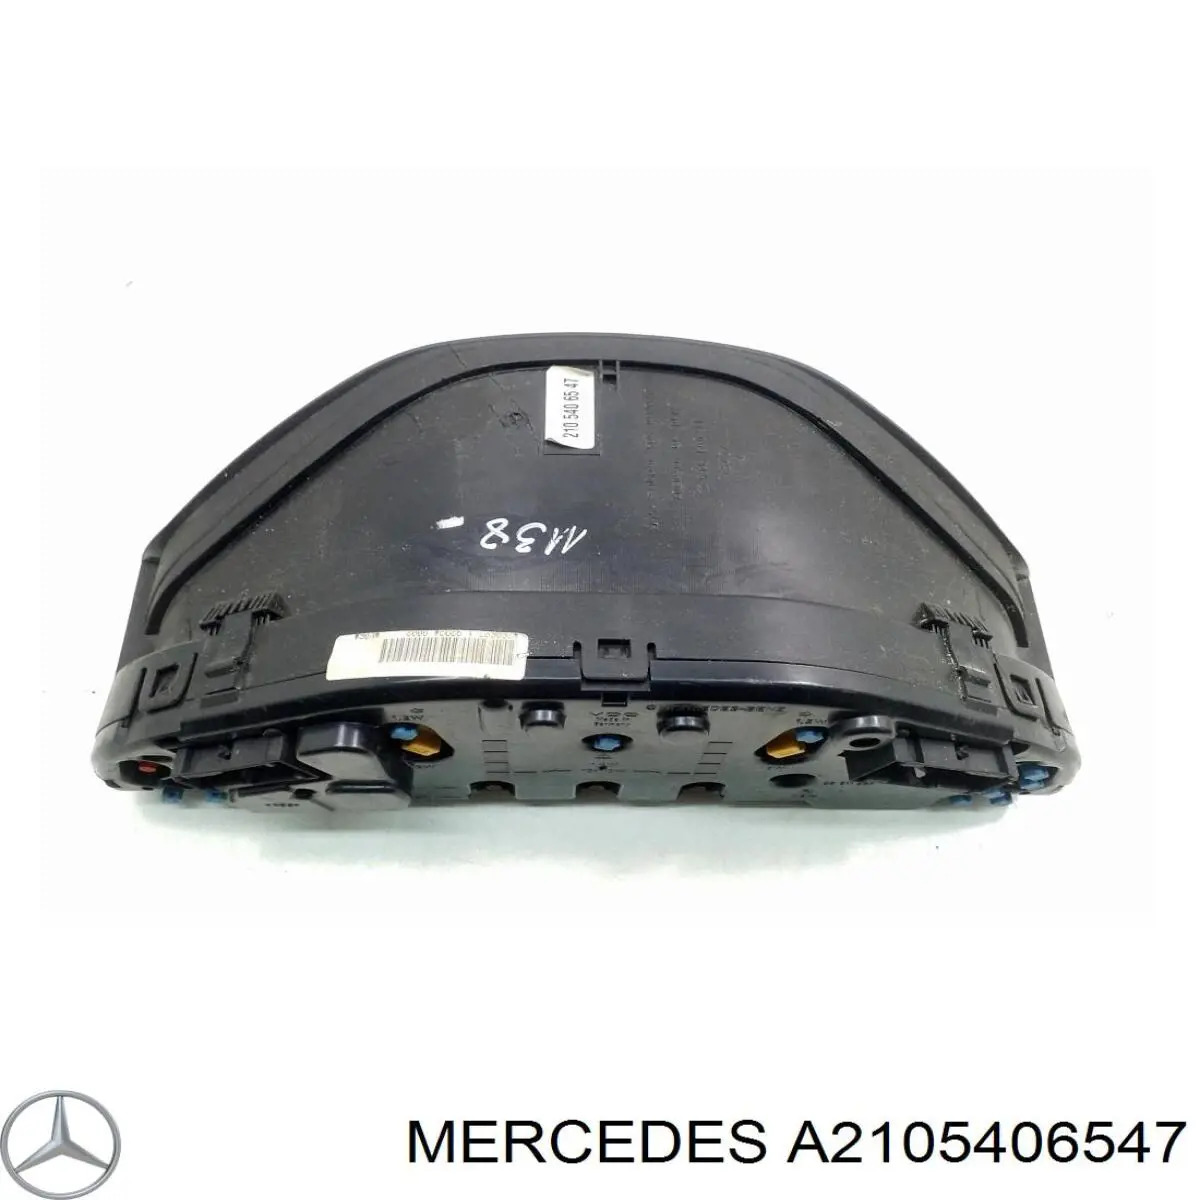 A2105406547 Mercedes tablero de instrumentos (panel de instrumentos)